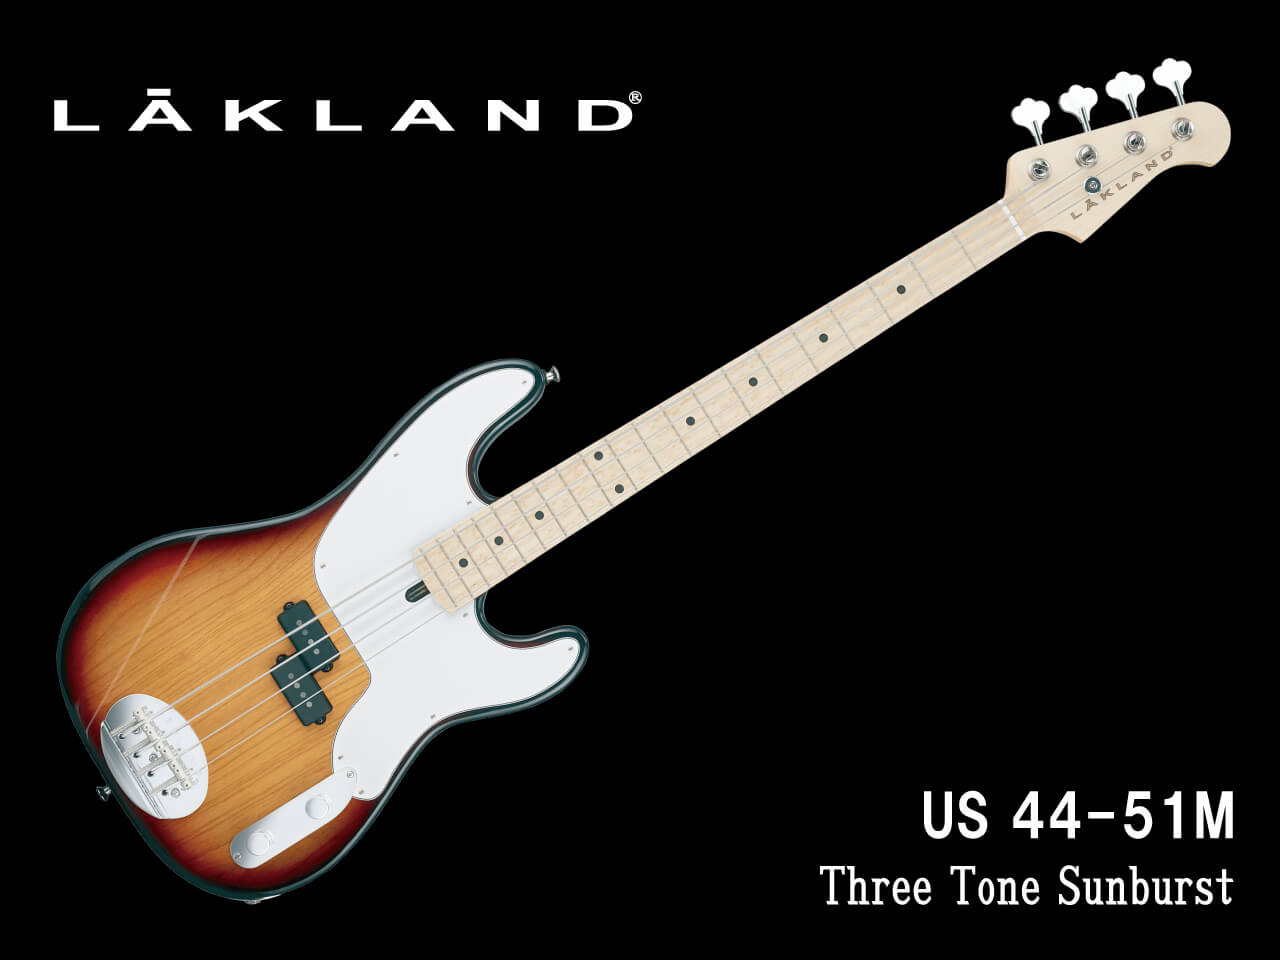 【受注生産】LAKLAND(レイクランド) USA US 44-51M (Three Tone Sunburst)